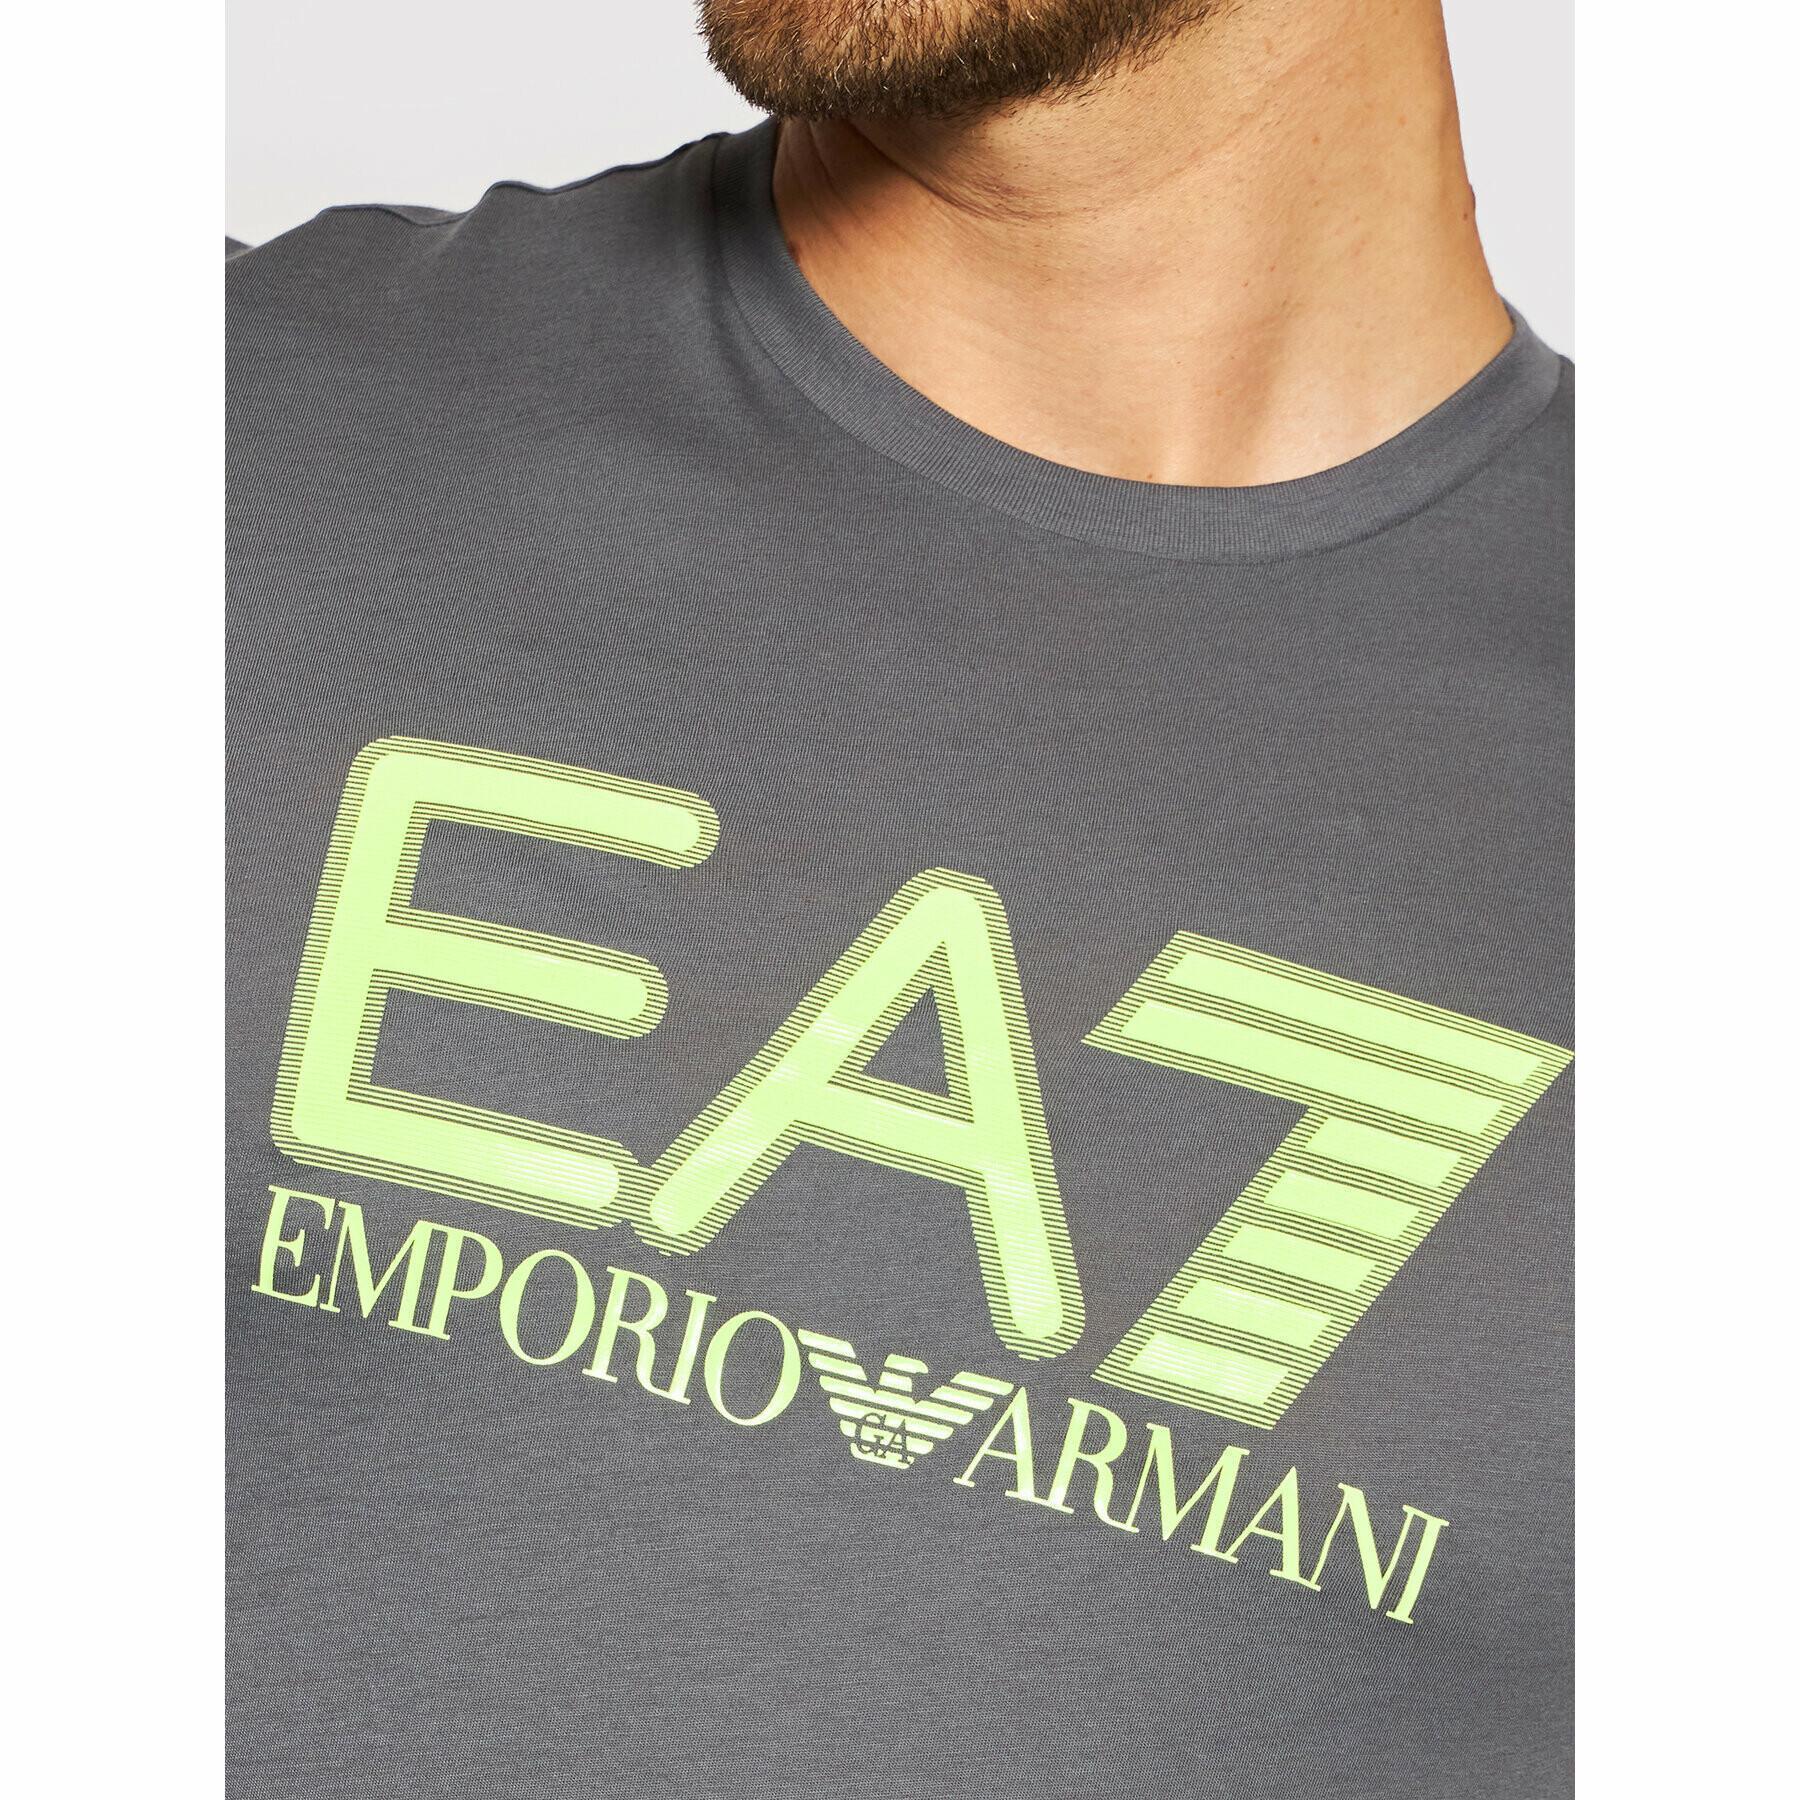 T-shirt EA7 Emporio Armani 6KPT81-PJM9Z grigio